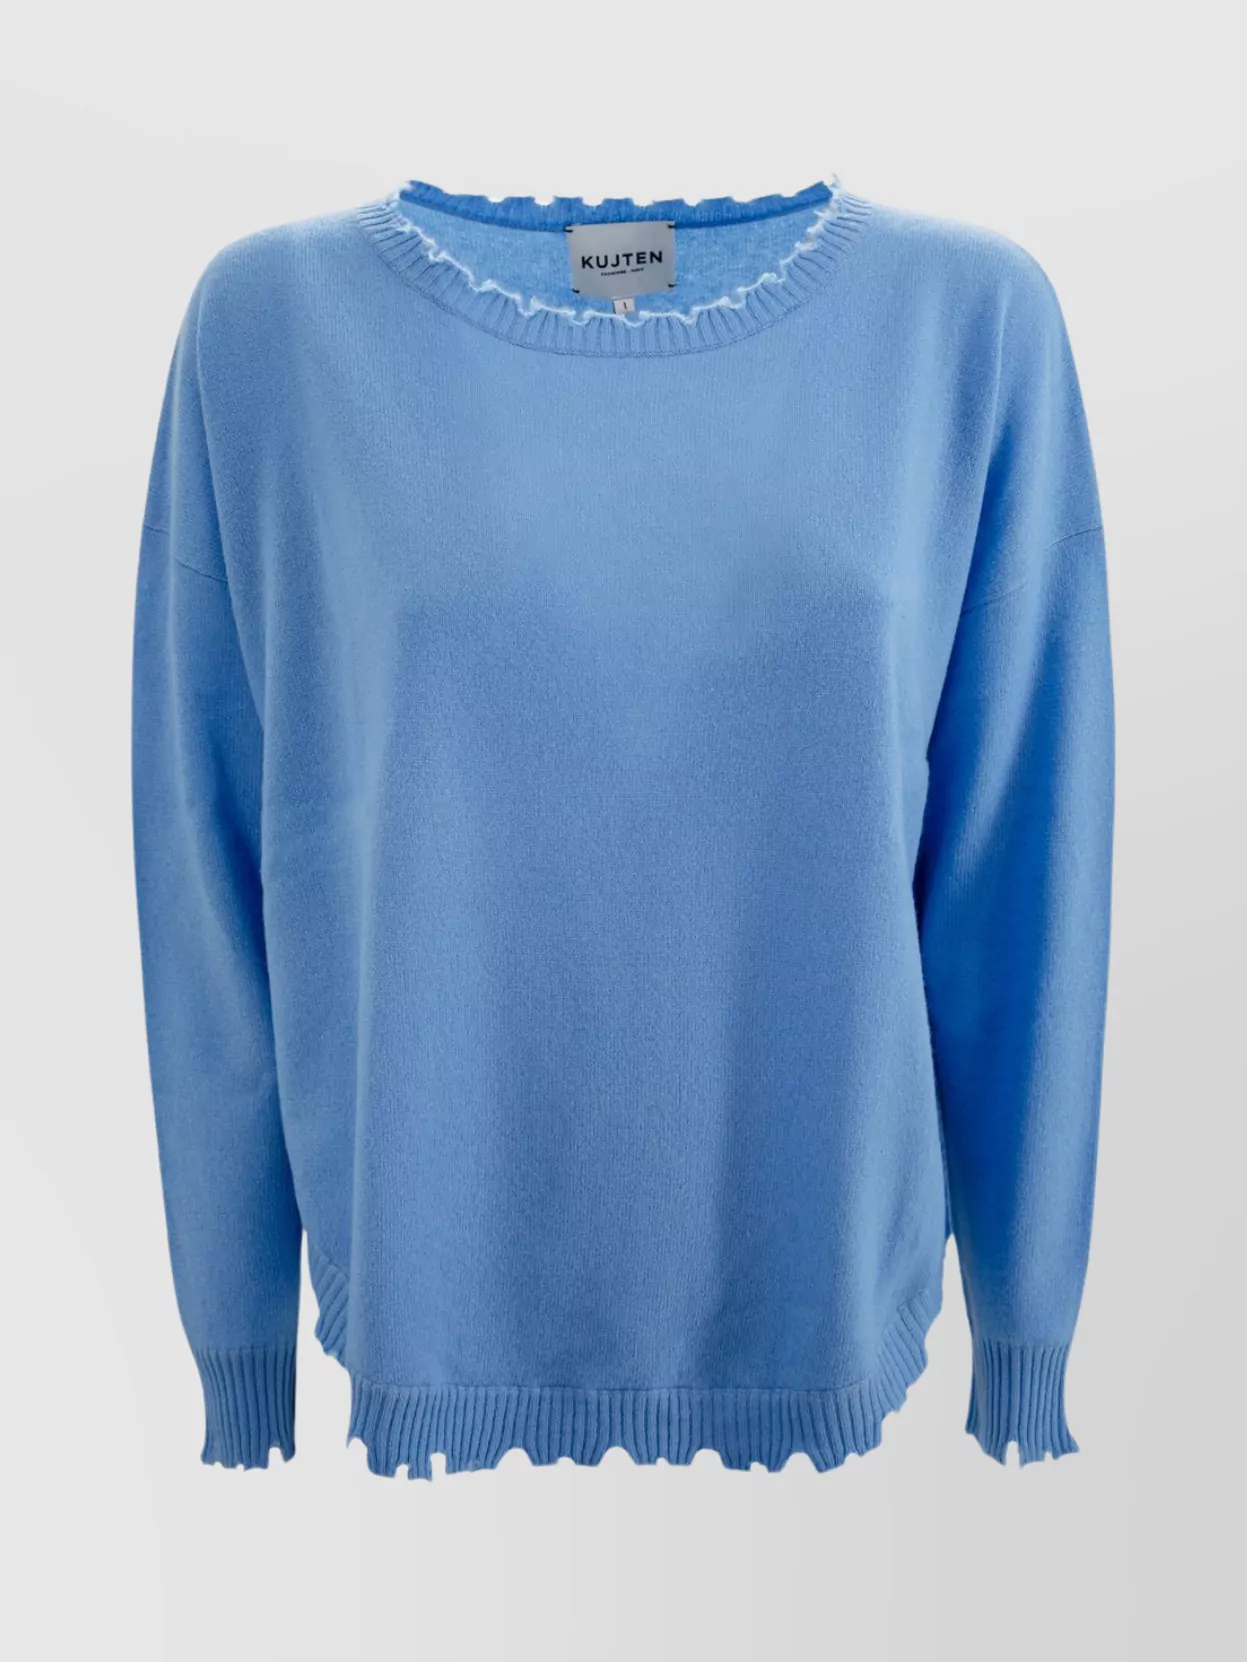 Shop Kujten Women Cashmere Sweater Round Neck